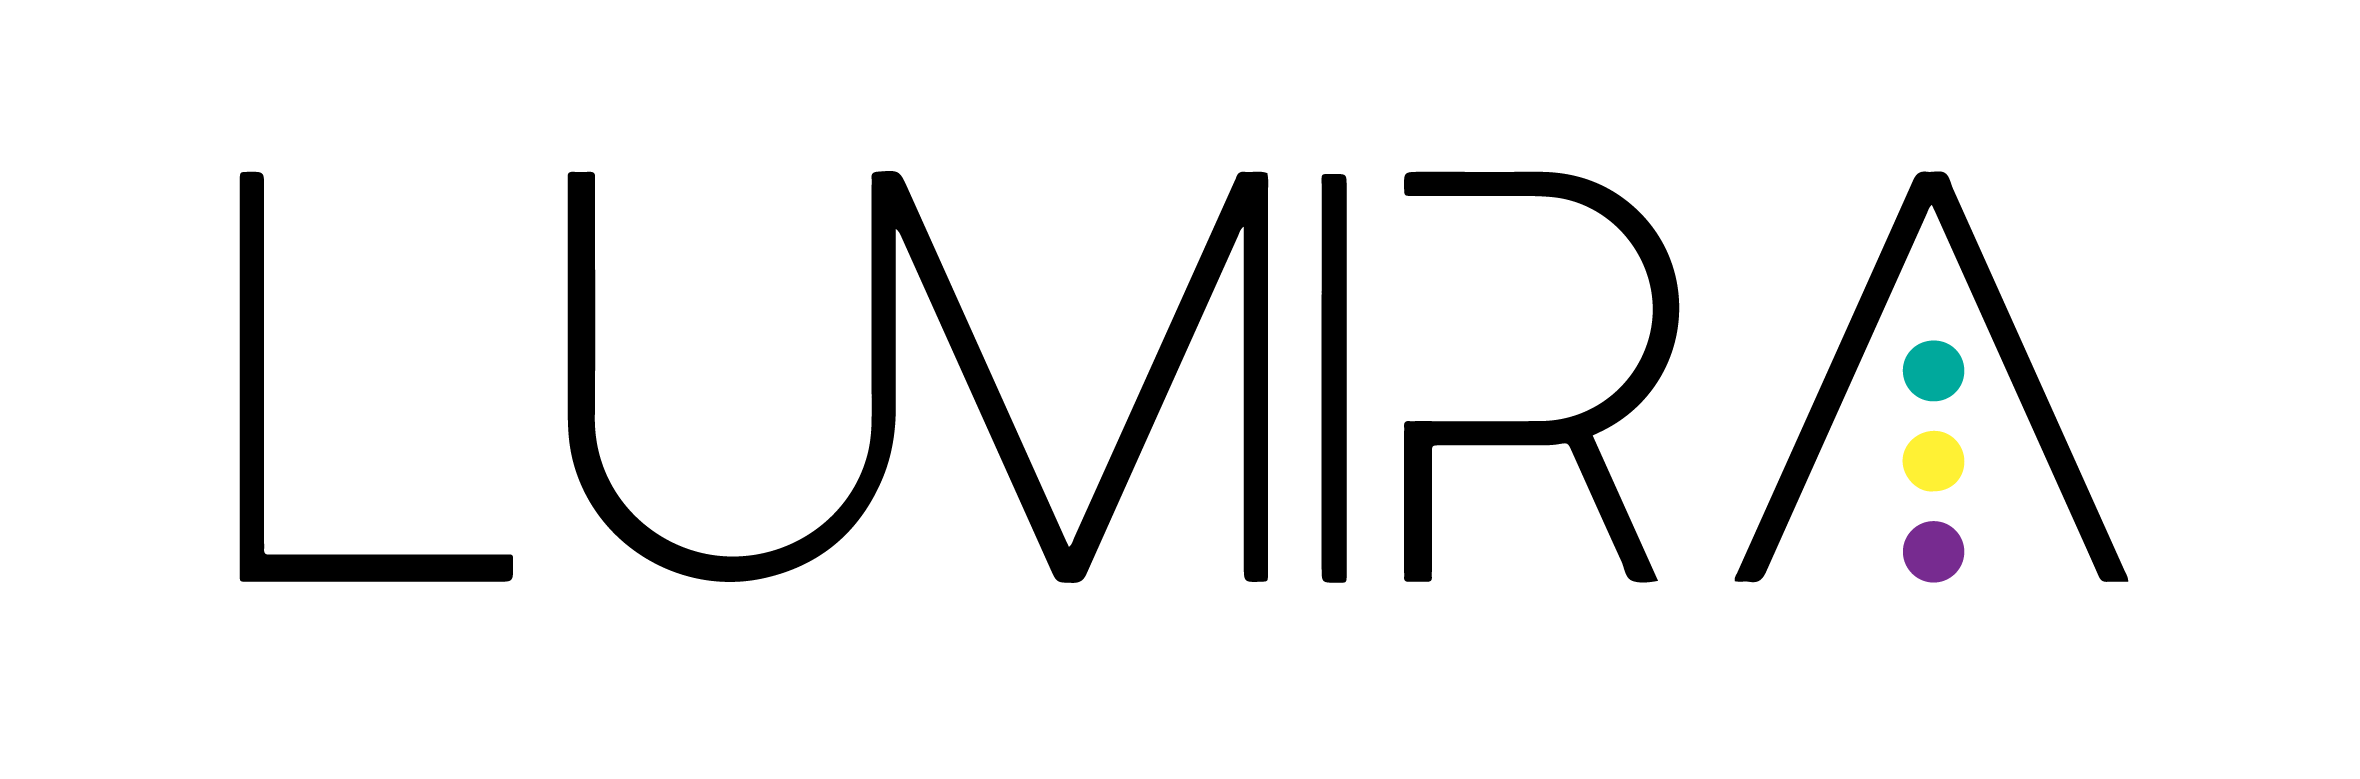 Asociatia Lumira logo